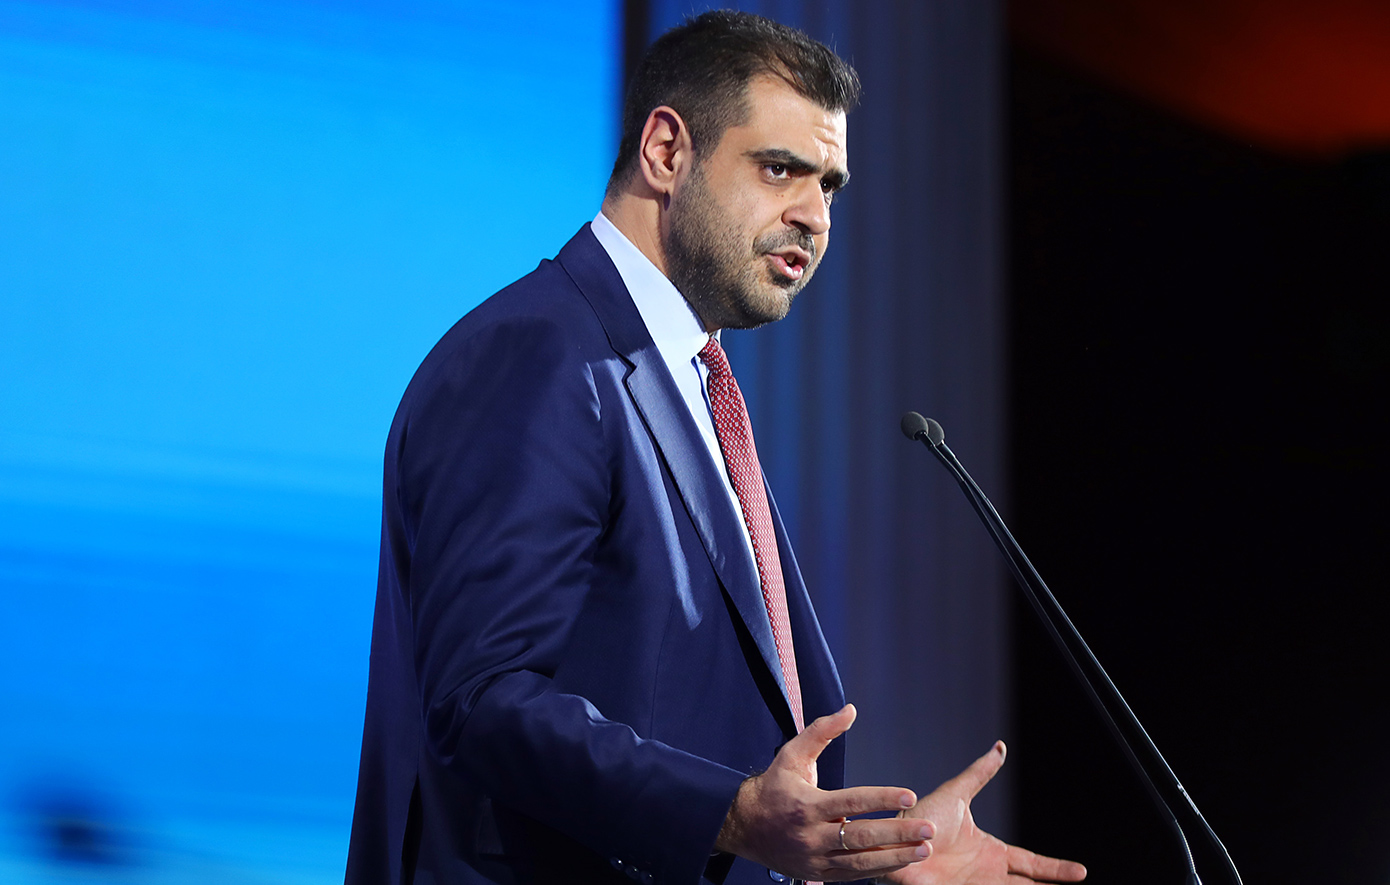 Παύλος Μαρινάκης για τον τελικό του Conference: Θα ήταν αδιανόητο να διώξουμε από τη χώρα τον τελικό